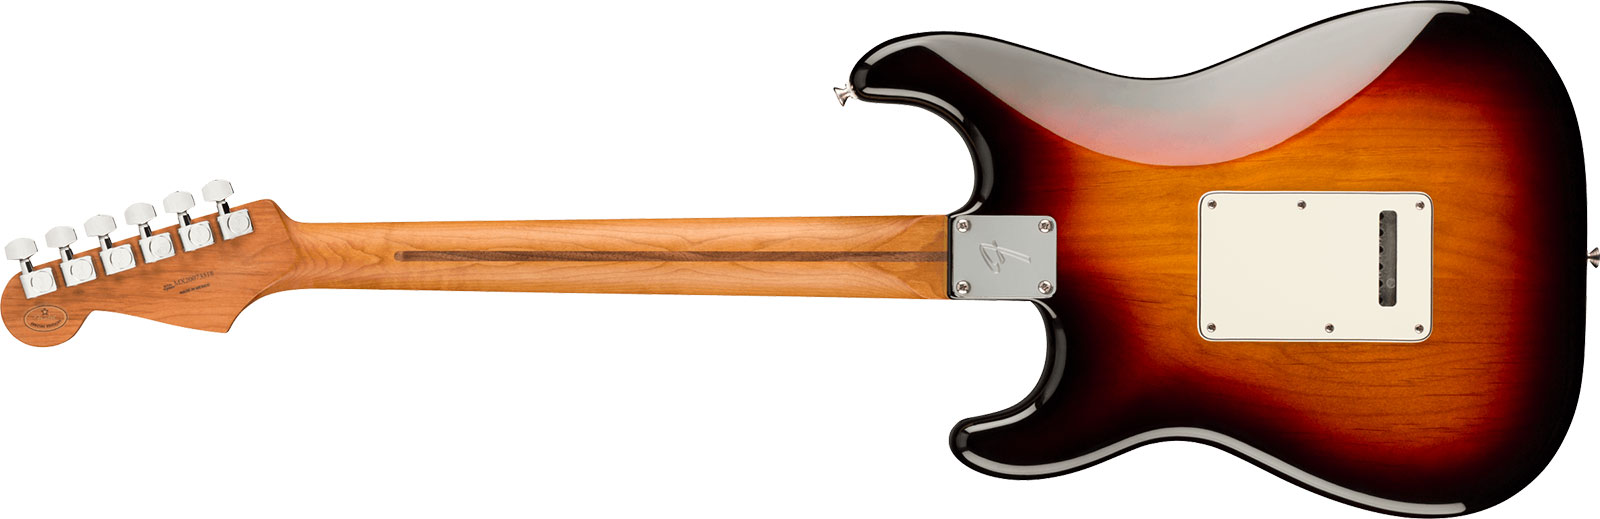 Fender Strat Player Roasted Maple Neck Ltd Mex 3s Trem Mn - 3 Color Sunburst - E-Gitarre in Str-Form - Variation 1